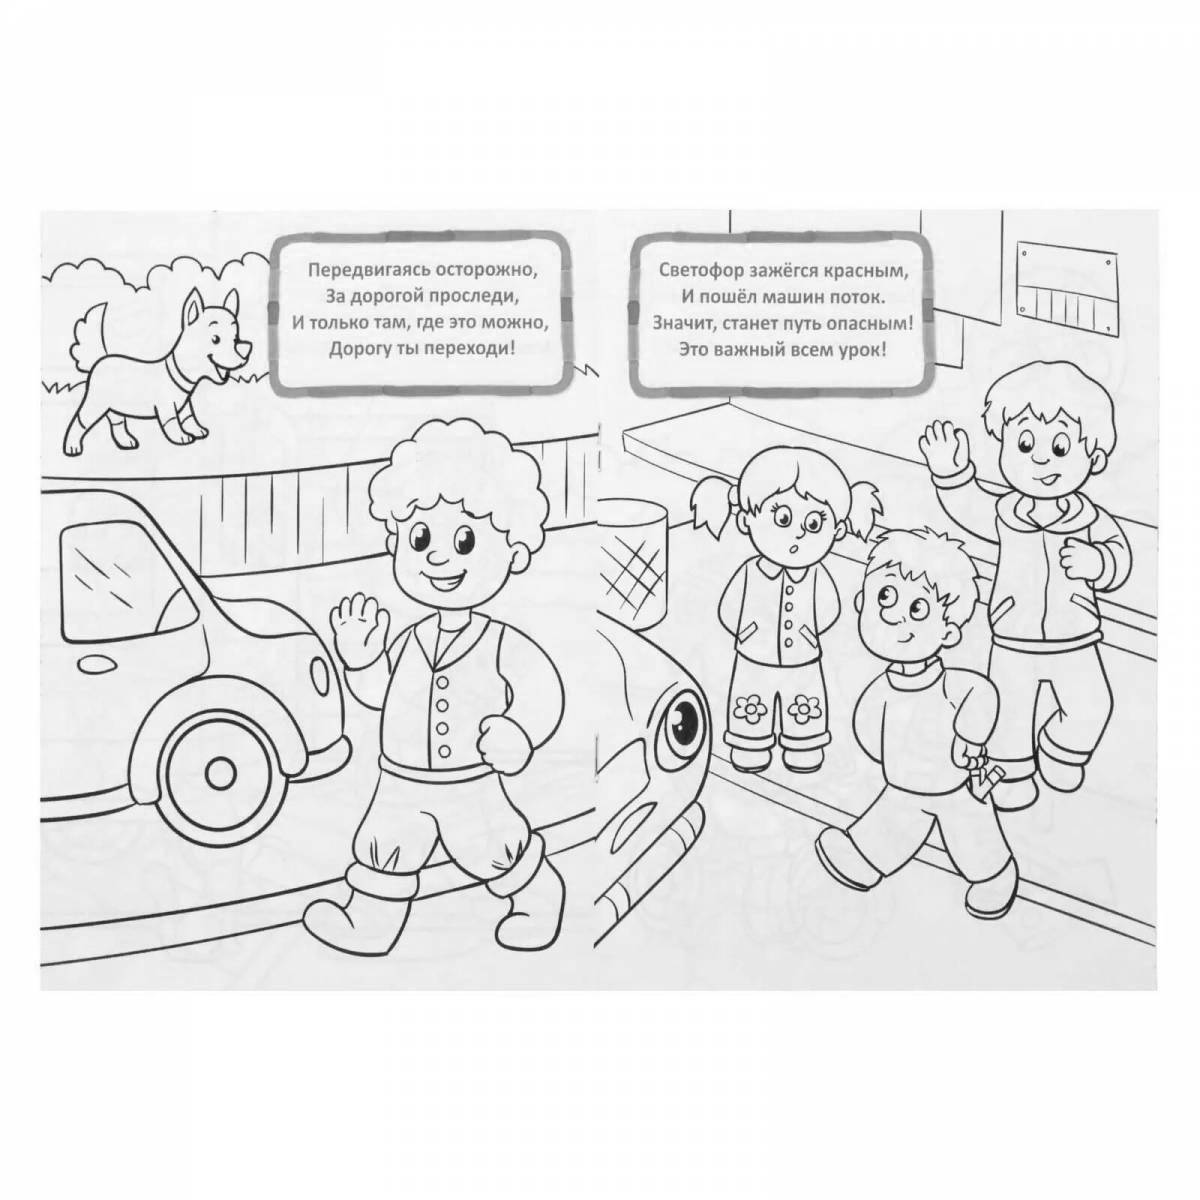 Preschool Safety ABC #16